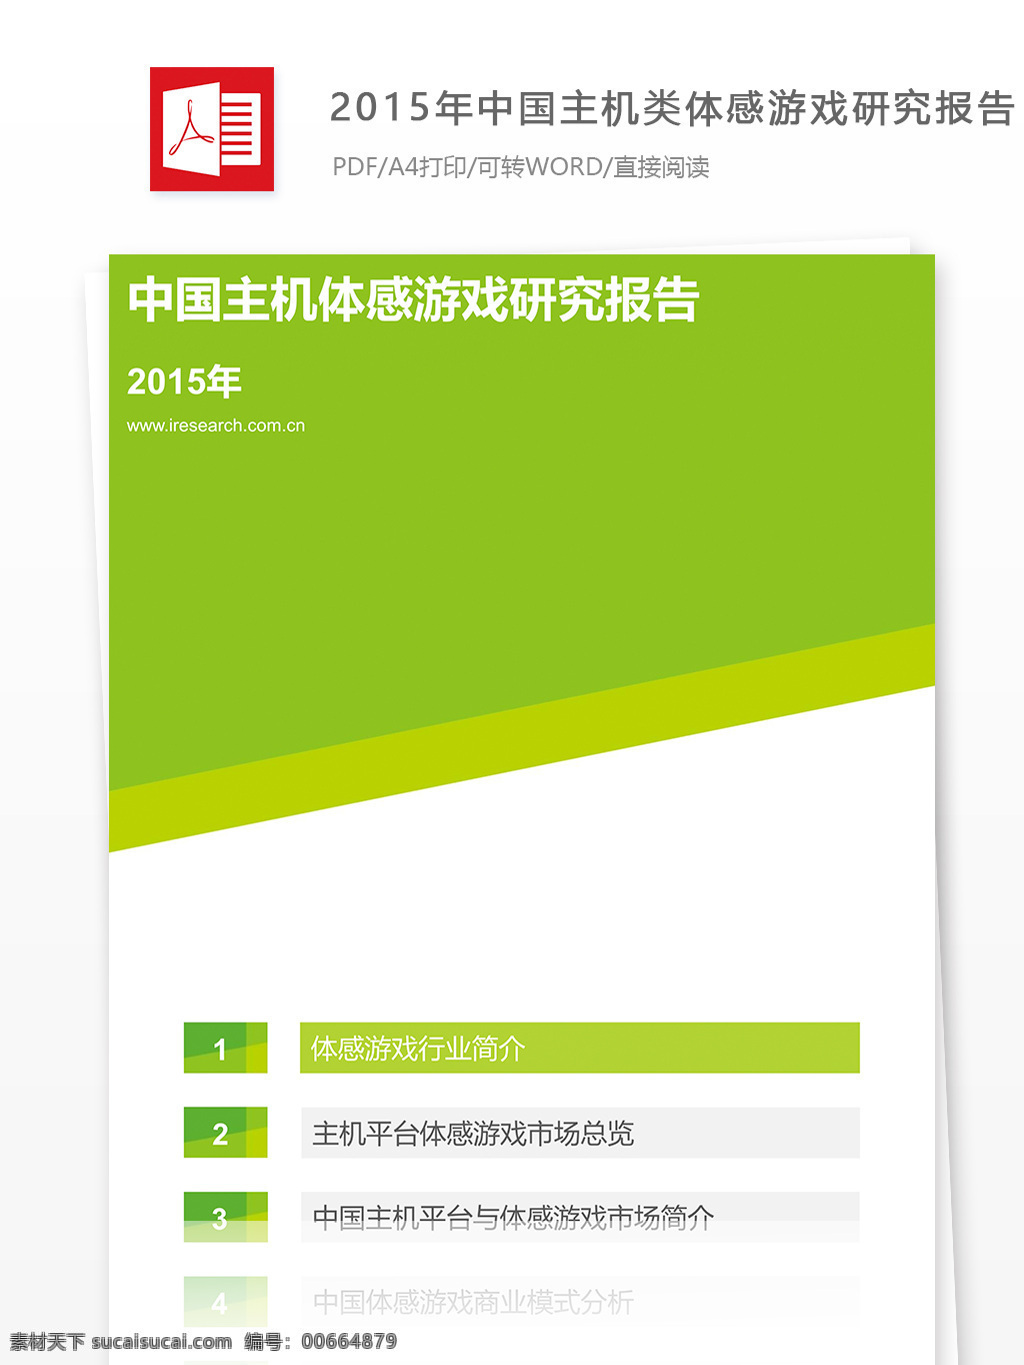 2015 年 中国 主机 类 体 感 游戏 研究报告 格式 范文 主体感游戏 分析报告 游戏行业